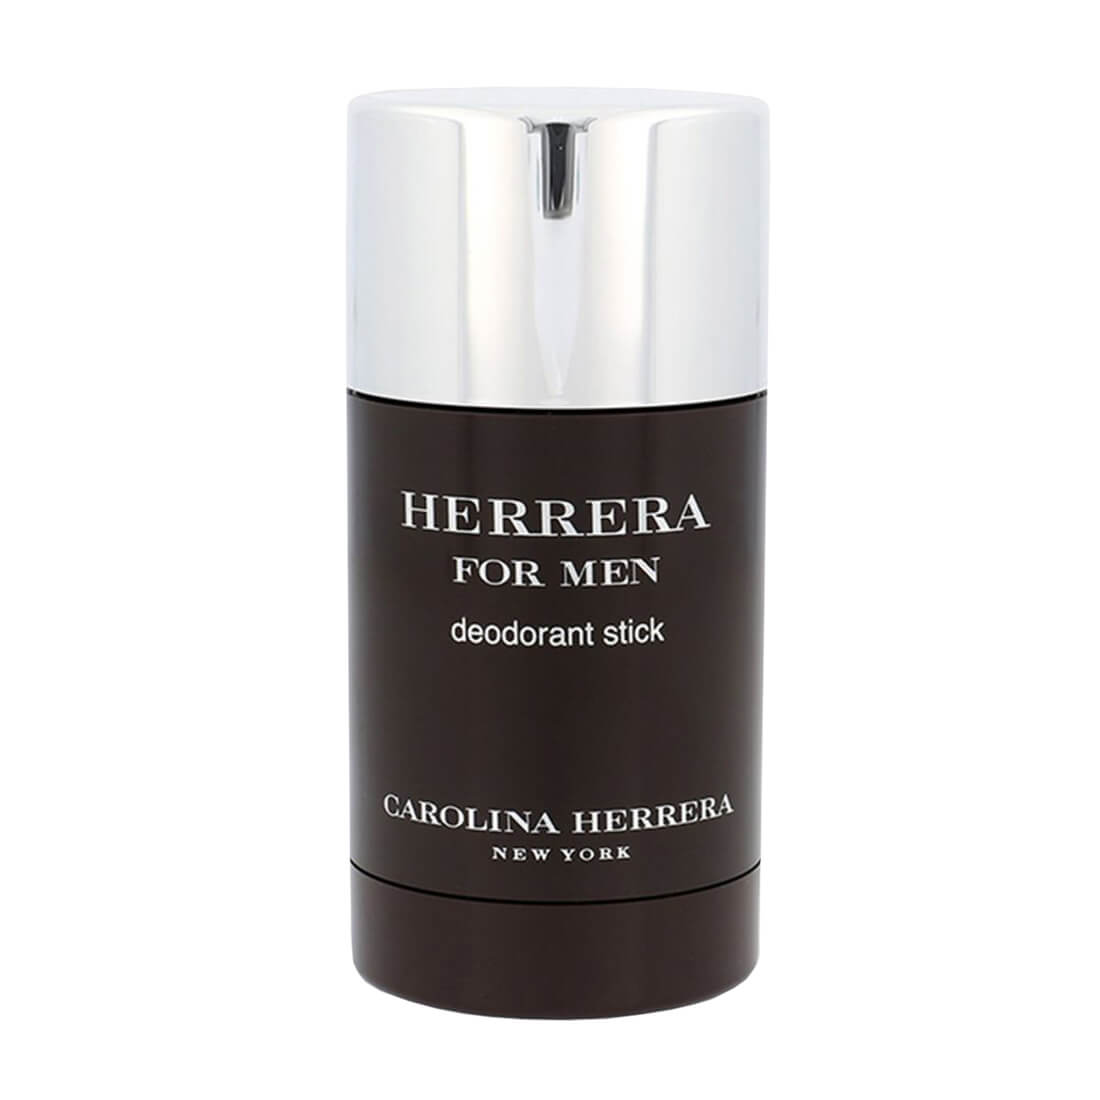 Carolina Herrera Herrera For Men Deodorant Stick 75ml